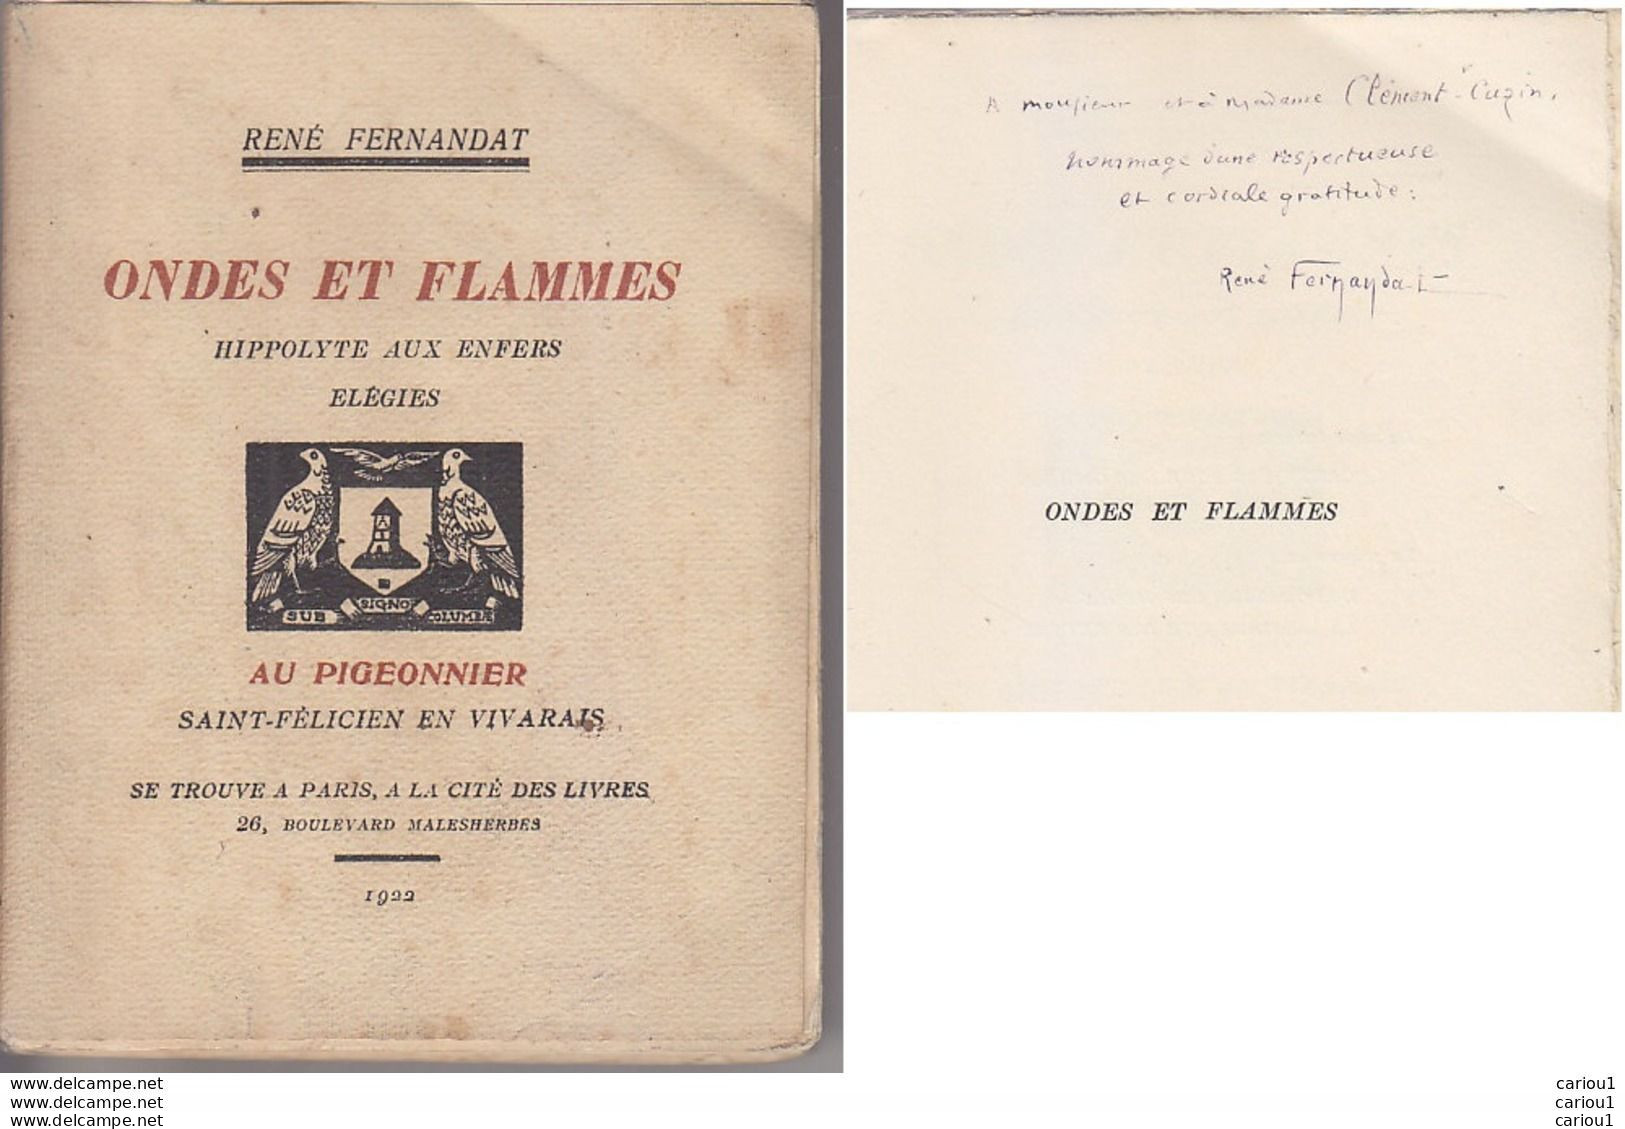 C1 Rene FERNANDAT Ondes Et Flammes 1922 DEDICACE ENVOI Forot PIGEONNIER Vivarais PORT INCLUS FRANCE - Libros Autografiados